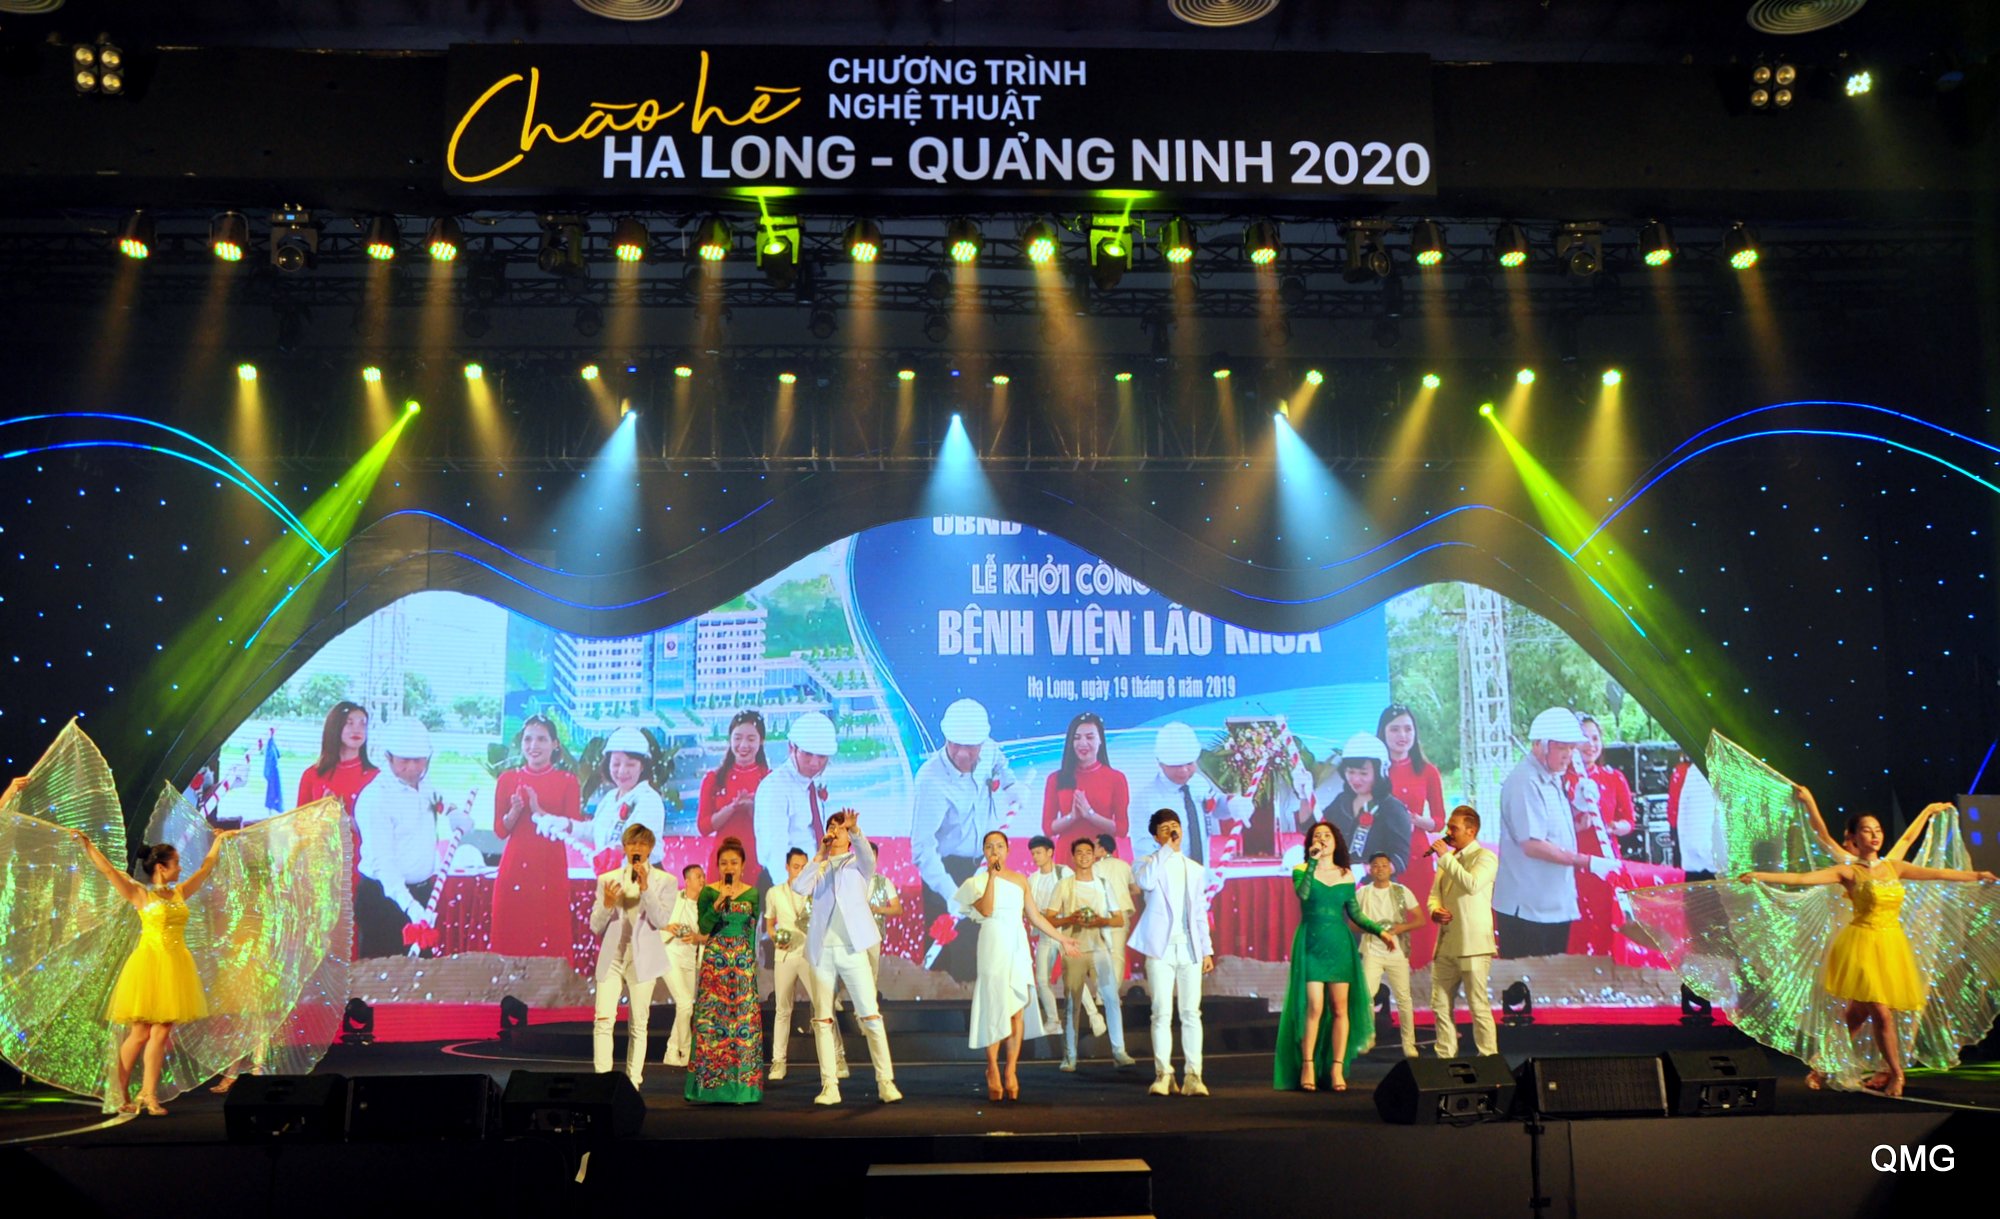 Chương trình nghệ thuật Chào Hè Hạ Long - Quảng Ninh 2020 mở màn cho chuỗi các hoạt động kích cầu, khôi phục hoạt động của du lịch Quảng Ninh.